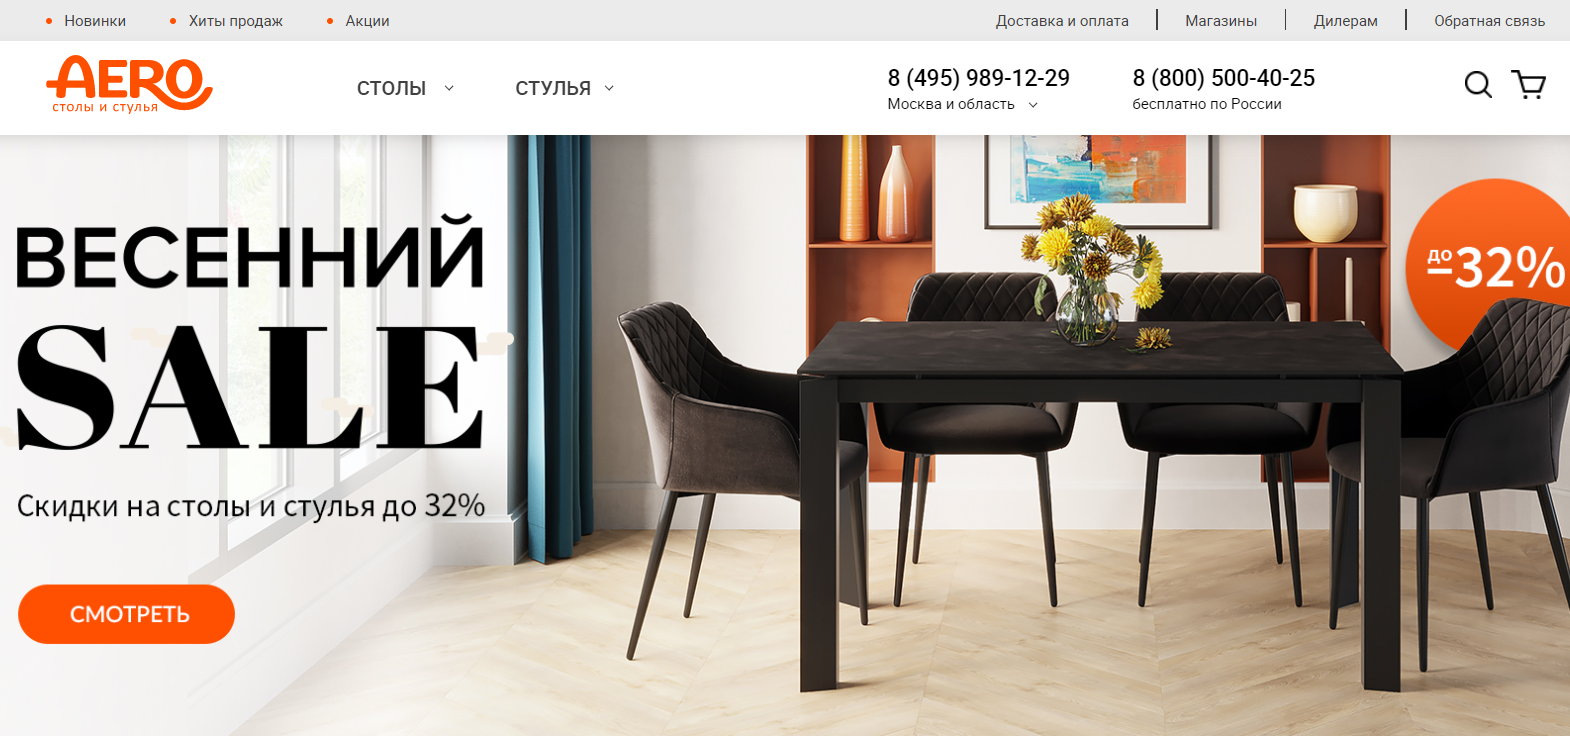 Мебель AERO официальный сайт интернет-магазина